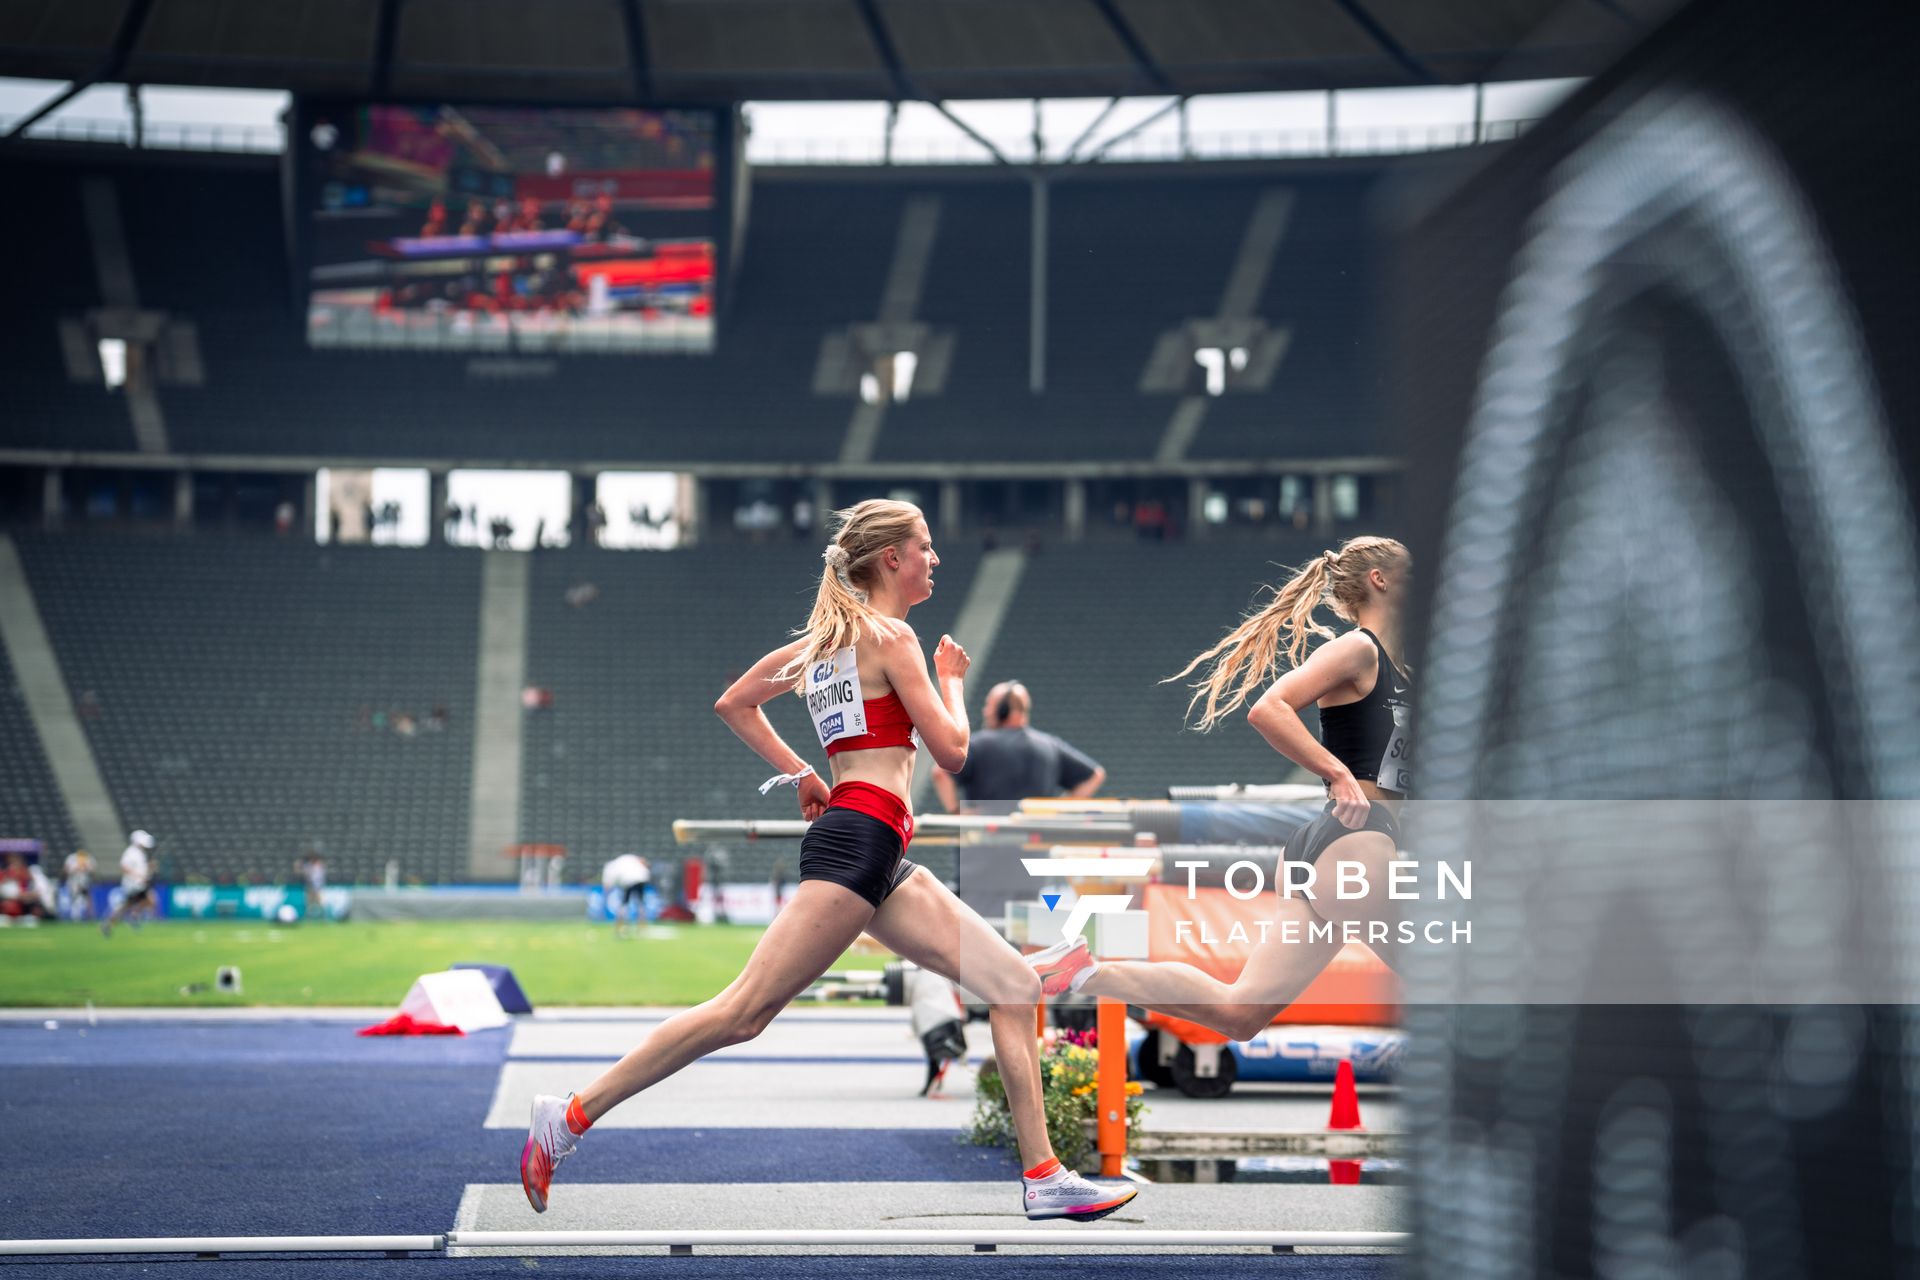 Marie Proepsting (VfL Eintracht Hannover) ueber 1500m waehrend der deutschen Leichtathletik-Meisterschaften im Olympiastadion am 25.06.2022 in Berlin